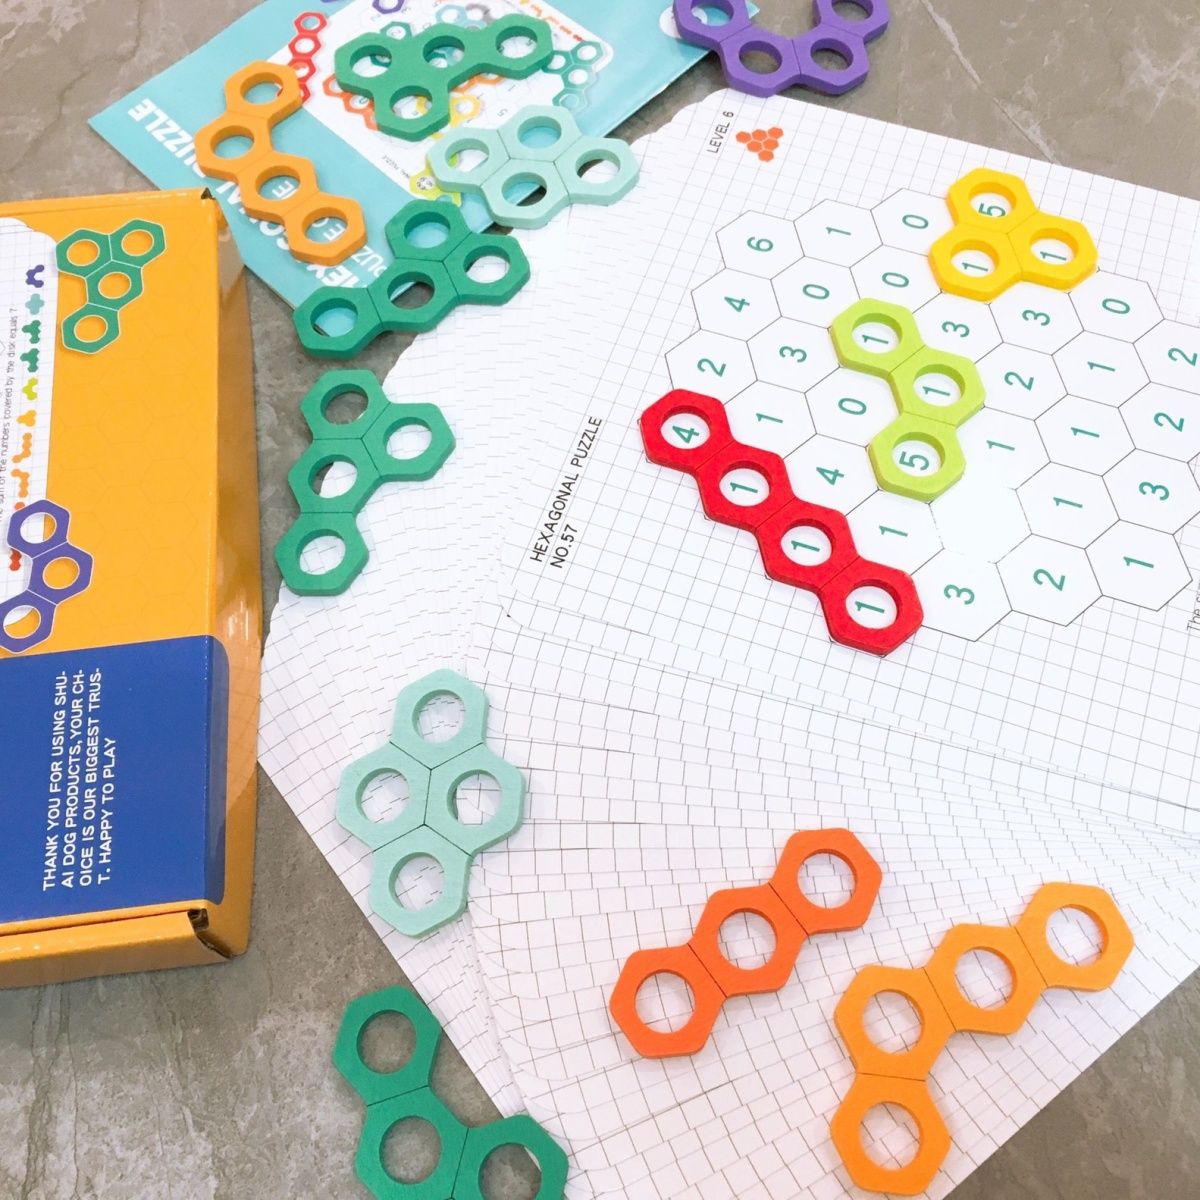 蜂窝趣味百变拼图儿童逻辑思维数字配对六边形桌游儿童益智玩具